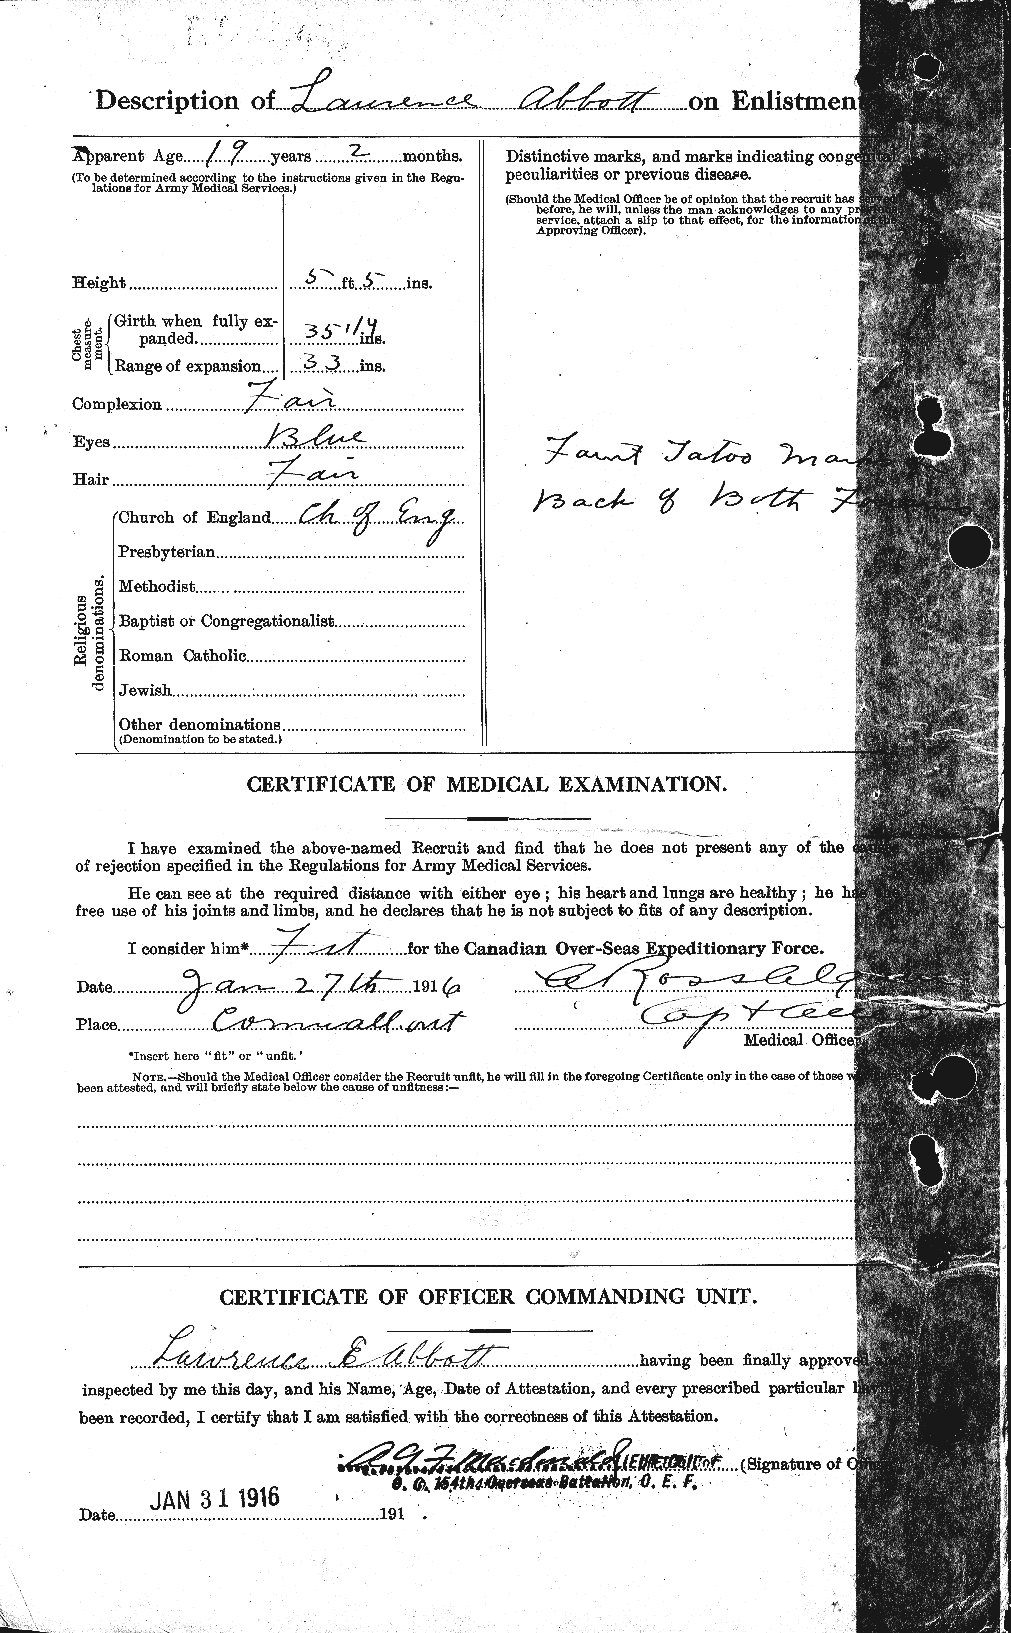 Dossiers du Personnel de la Première Guerre mondiale - CEC 201059b